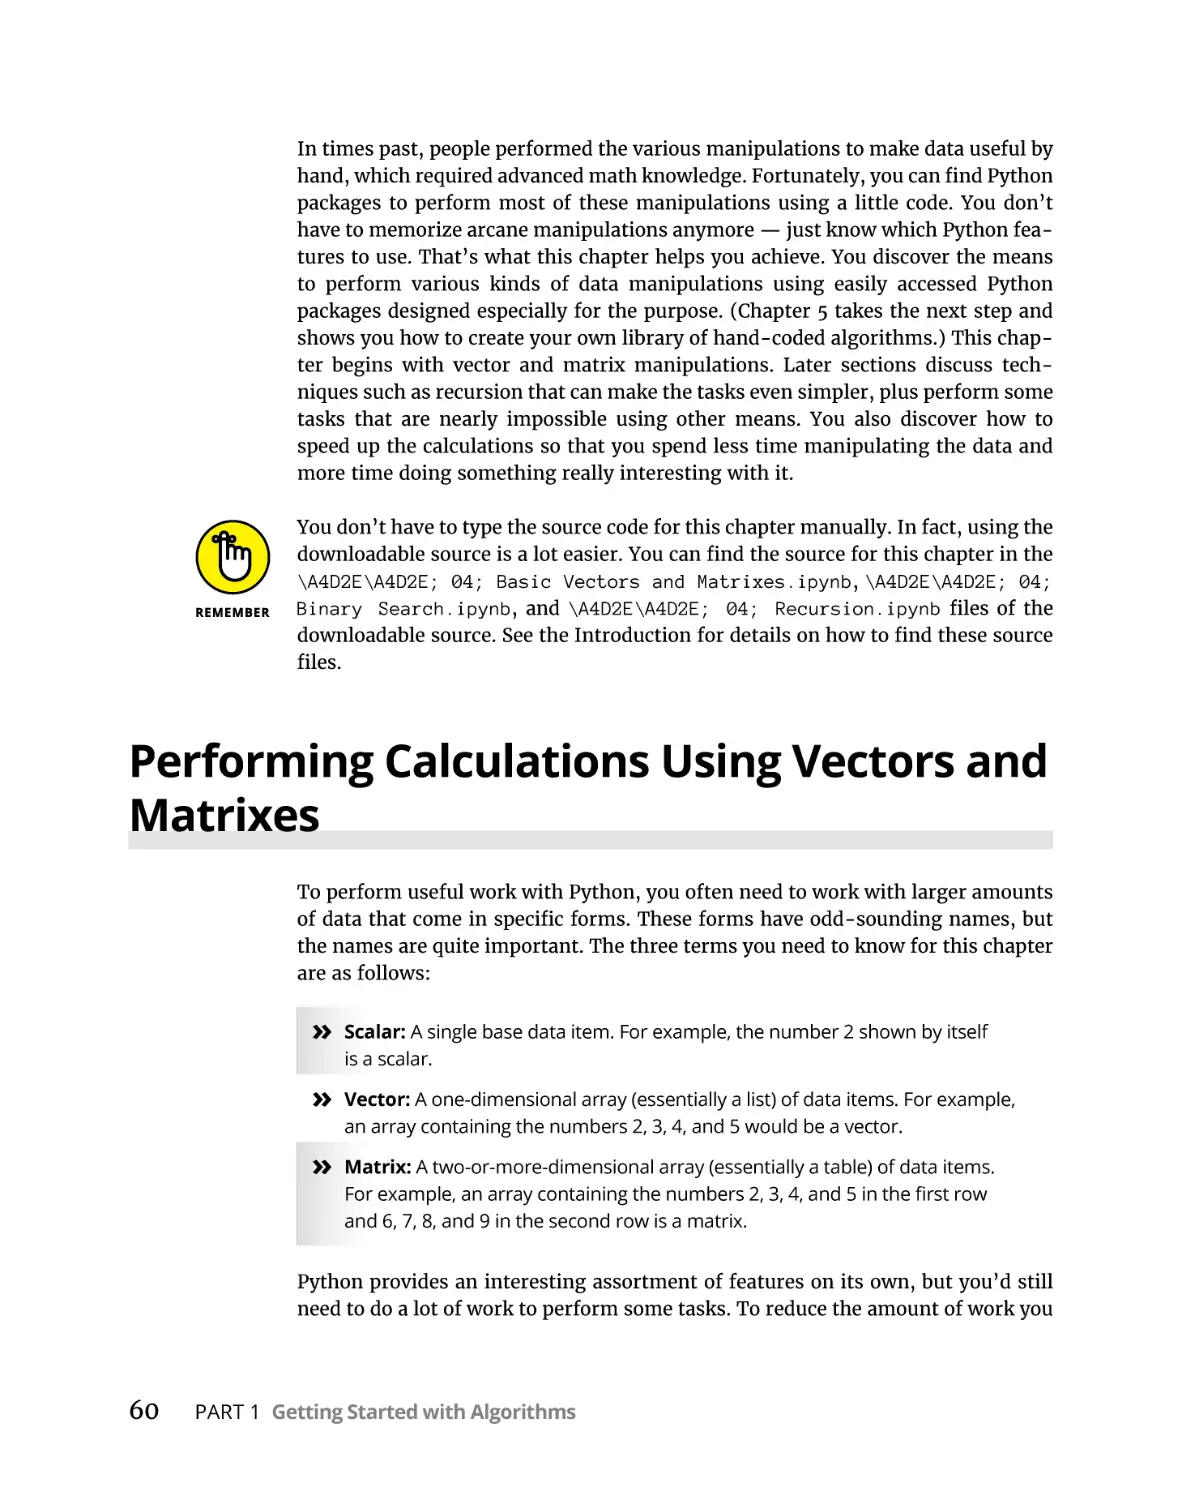 Performing Calculations Using Vectors and Matrixes